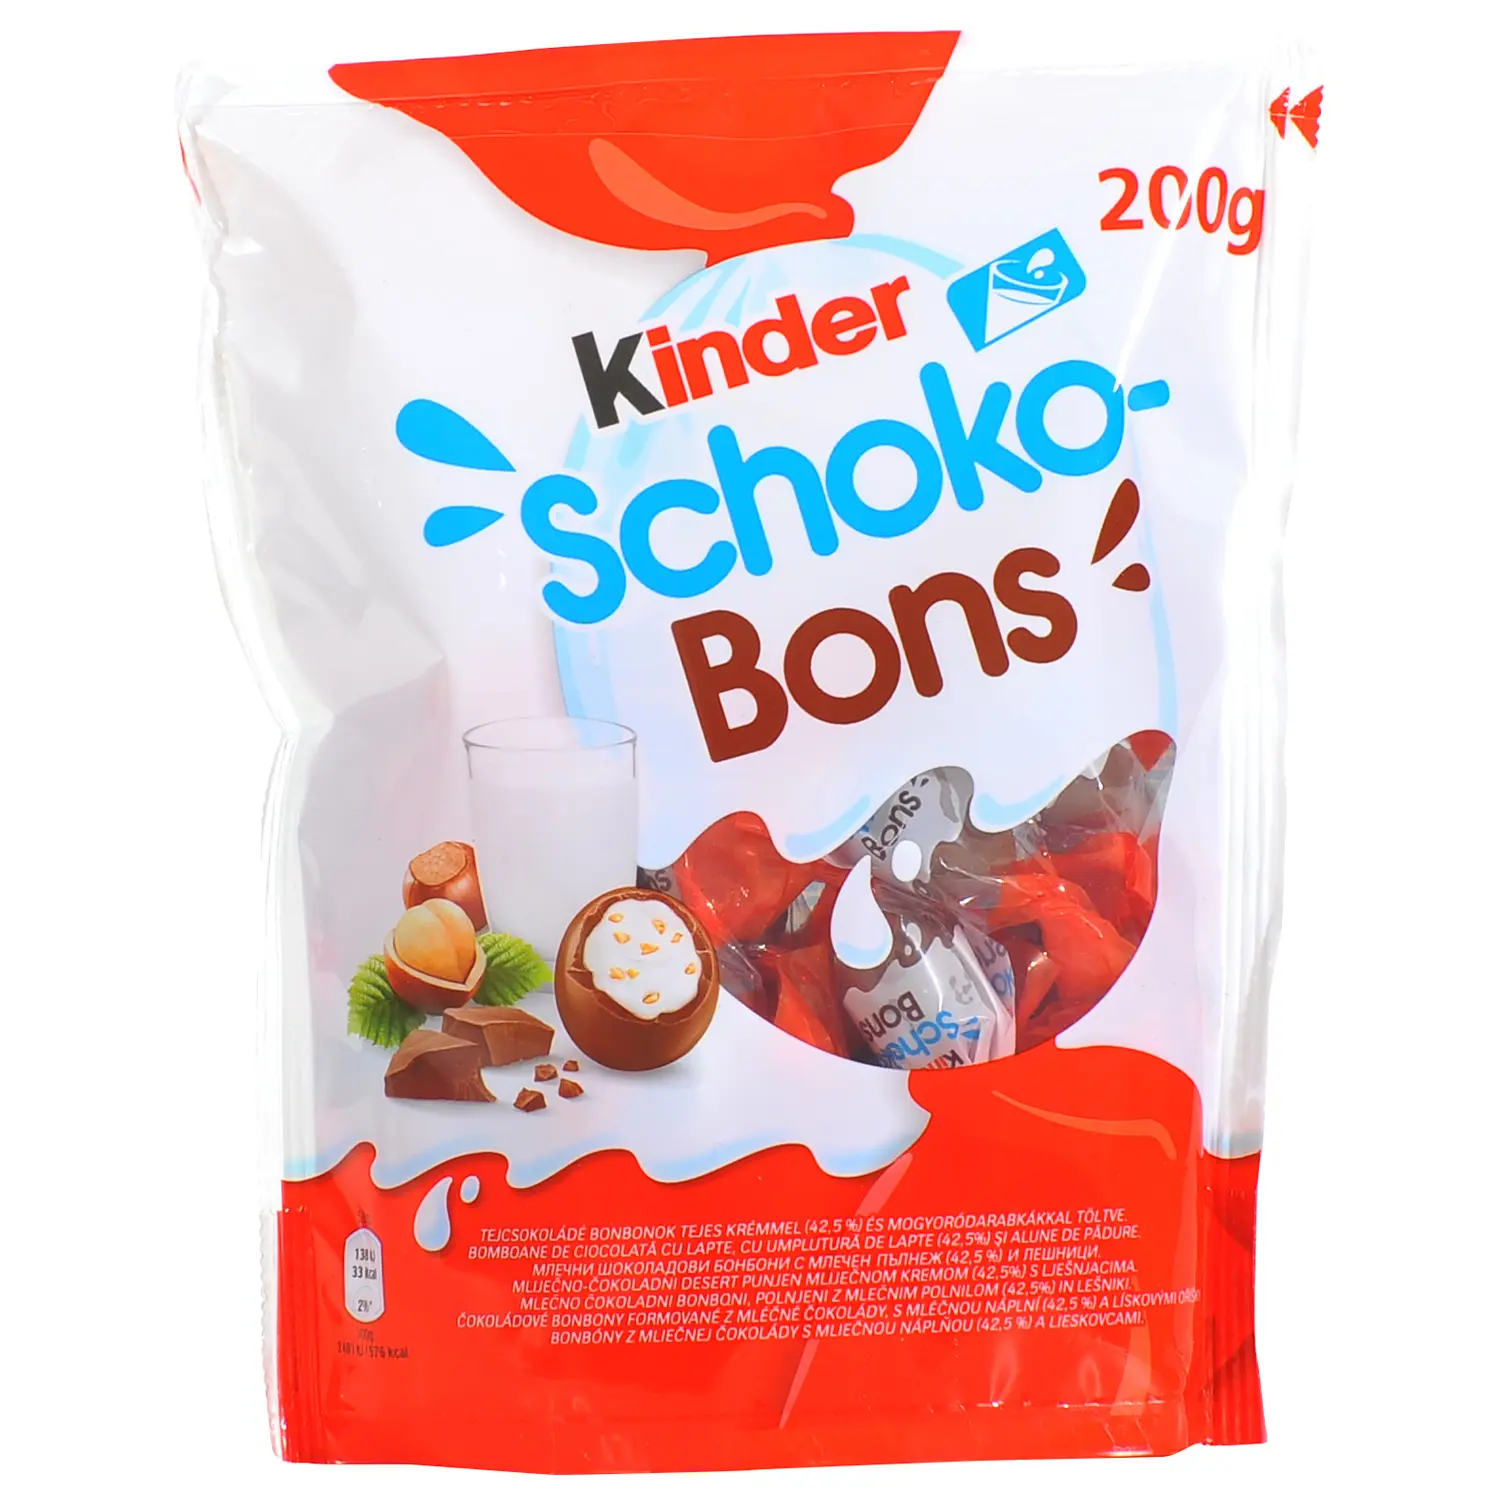 Kinder Schoko- ลูกบอลกรอบ Kinder Schoko Bons อร่อยพร้อมชิ้นเฮเซลนัทและหุ้มด้วยช็อคโกแลต